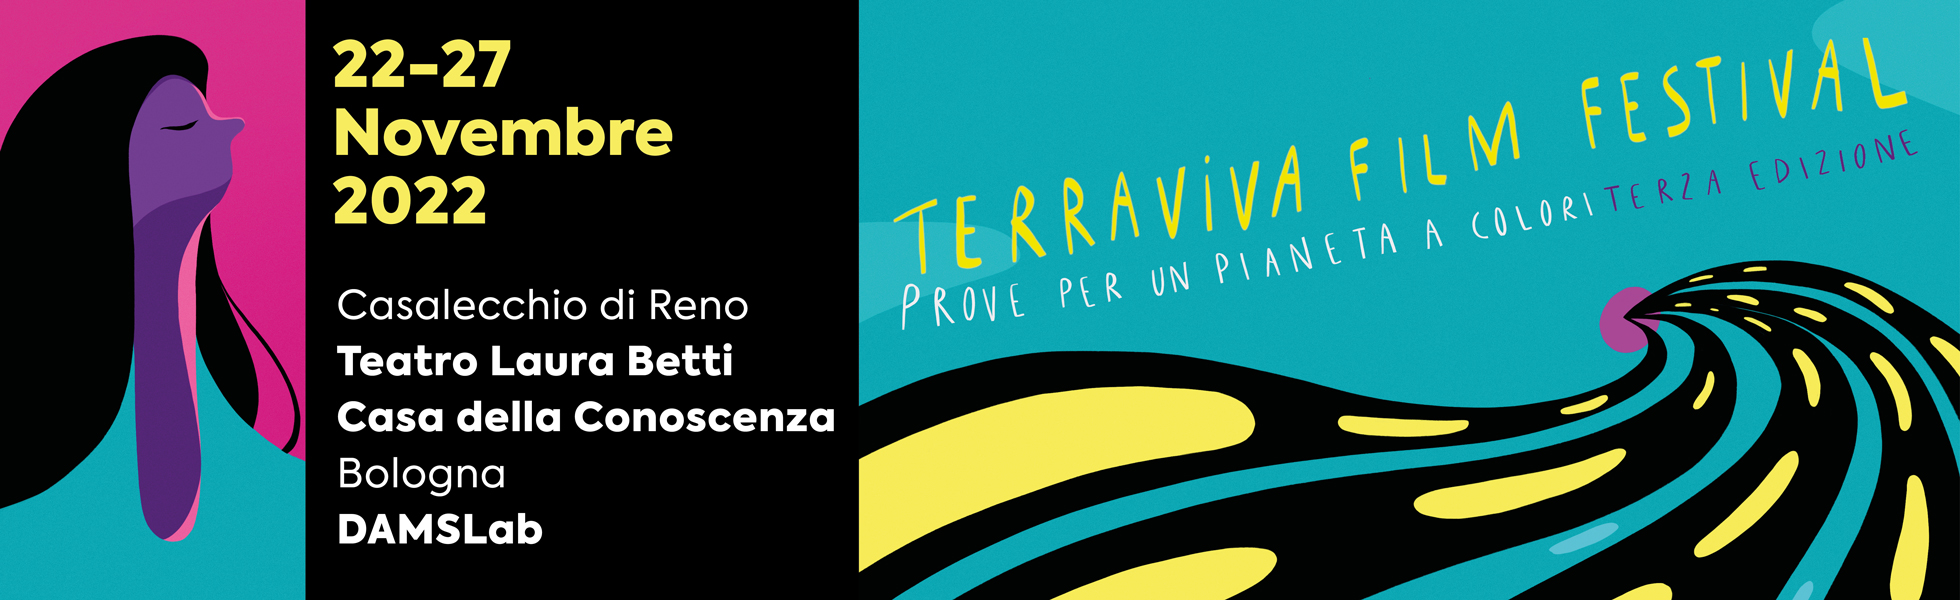 02OK_ESEC_Terraviva_FilmFestival_banner